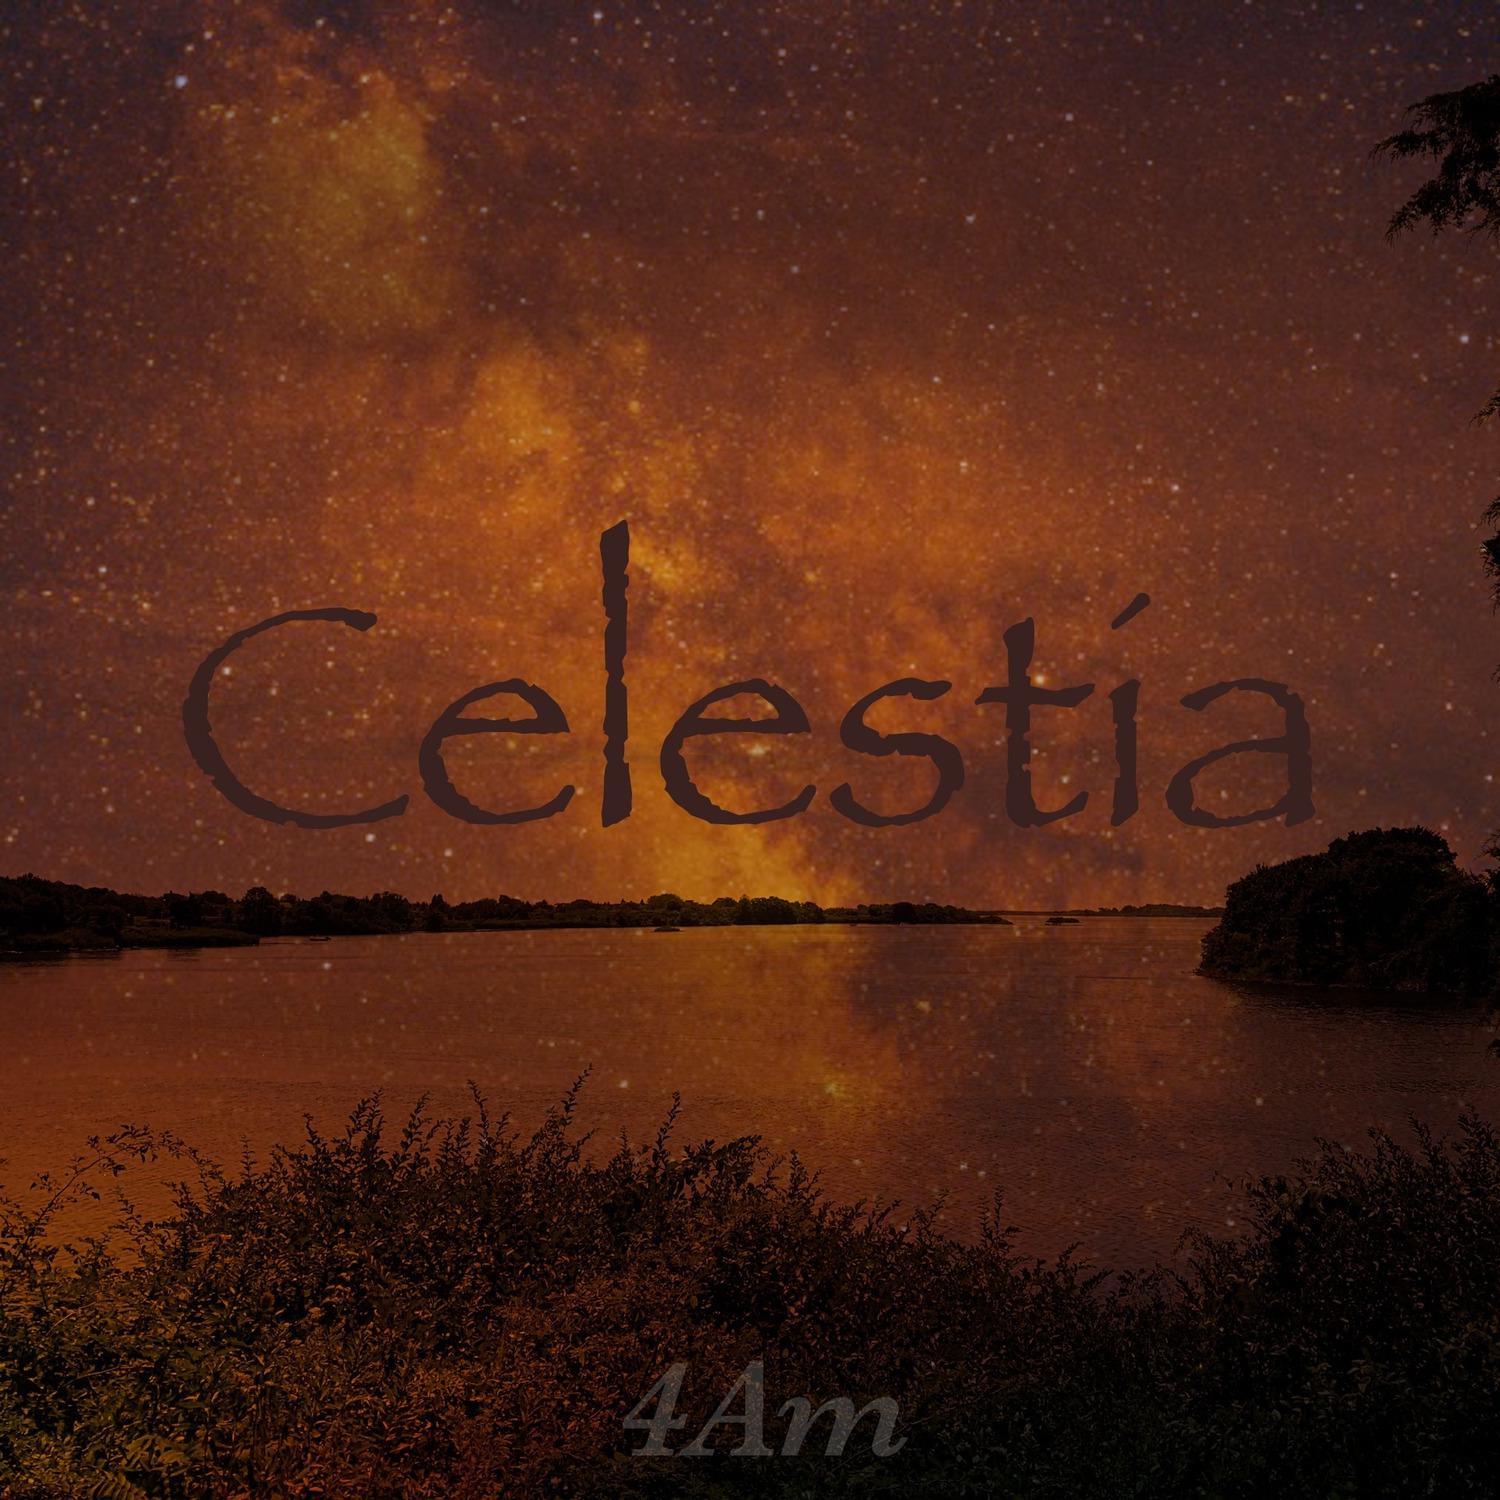 Celestia - 4am